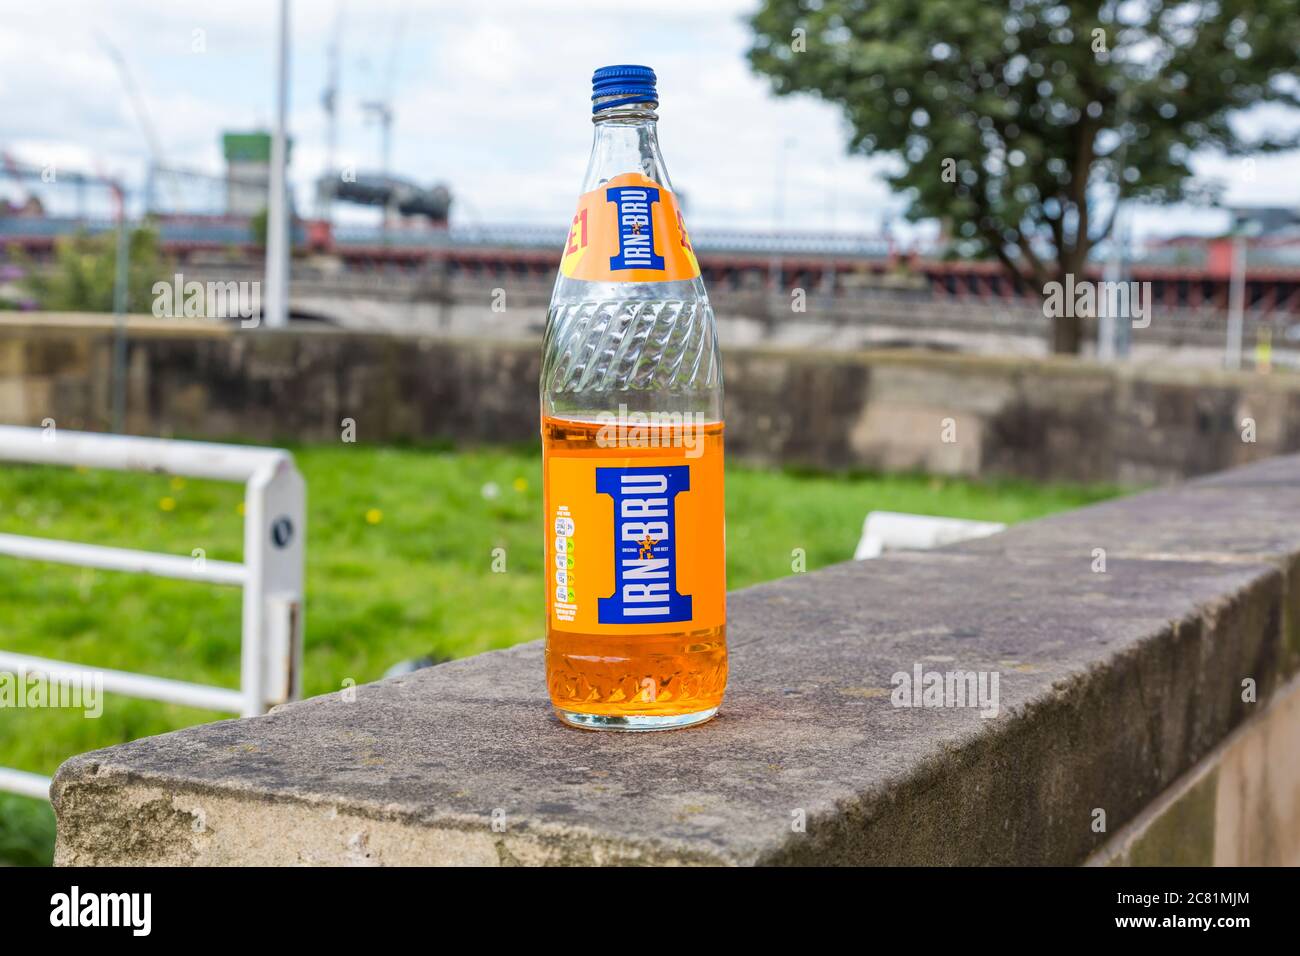 Una mezza bottiglia piena di Barr's Irn Bru scartata su una strada cittadina, Glasgow, Scozia, Regno Unito Foto Stock